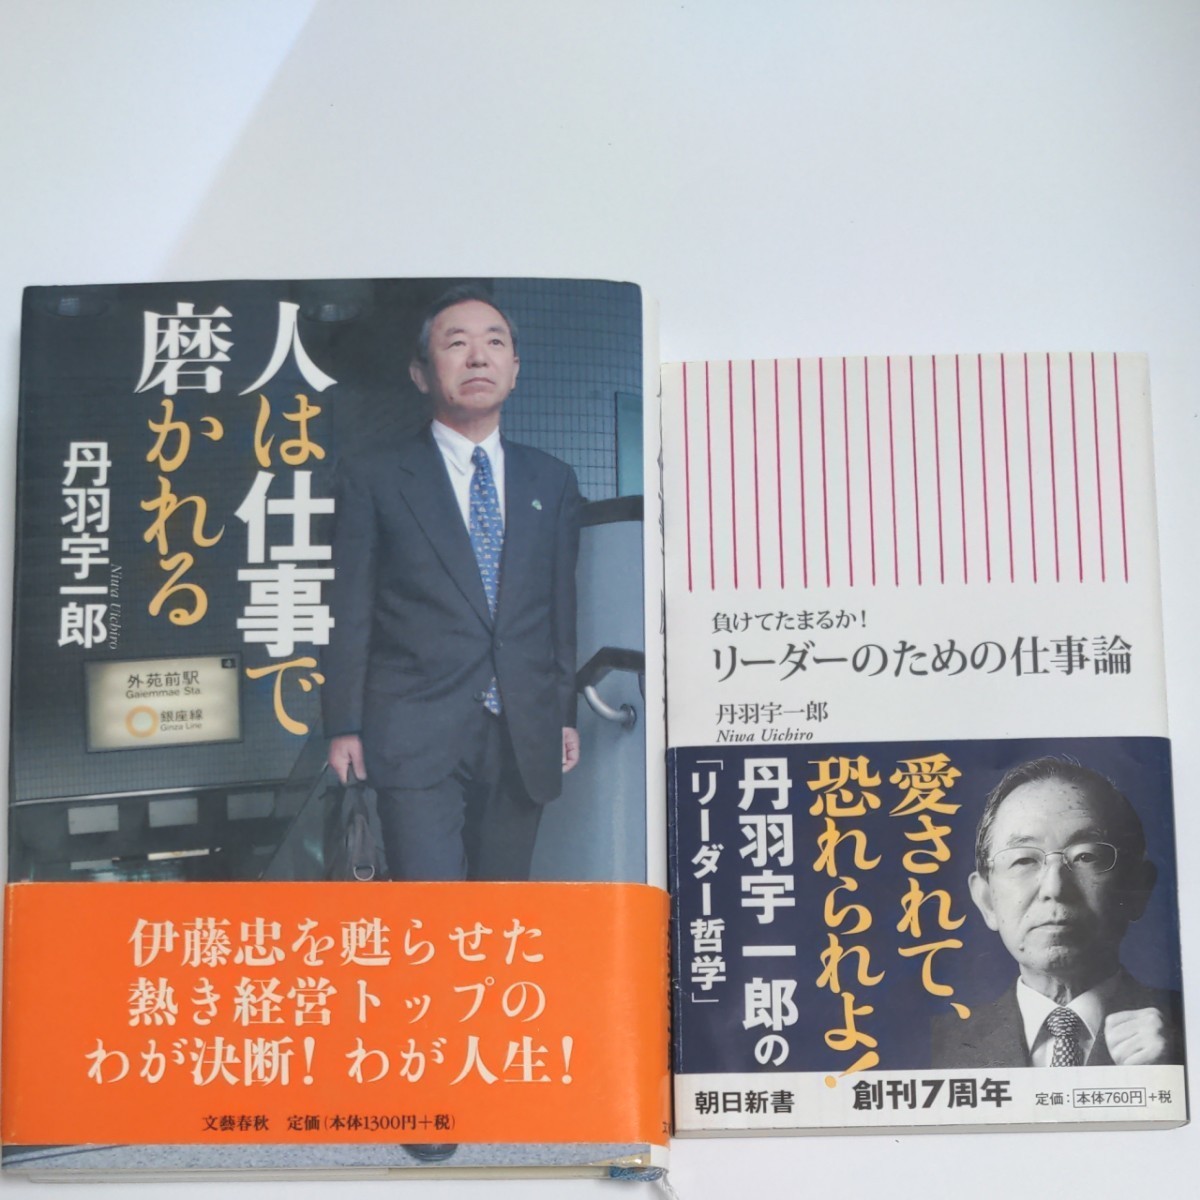 「リーダーのための仕事論 負けてたまるか!」　「人は仕事で磨かれる」２冊セット　丹羽宇一郎